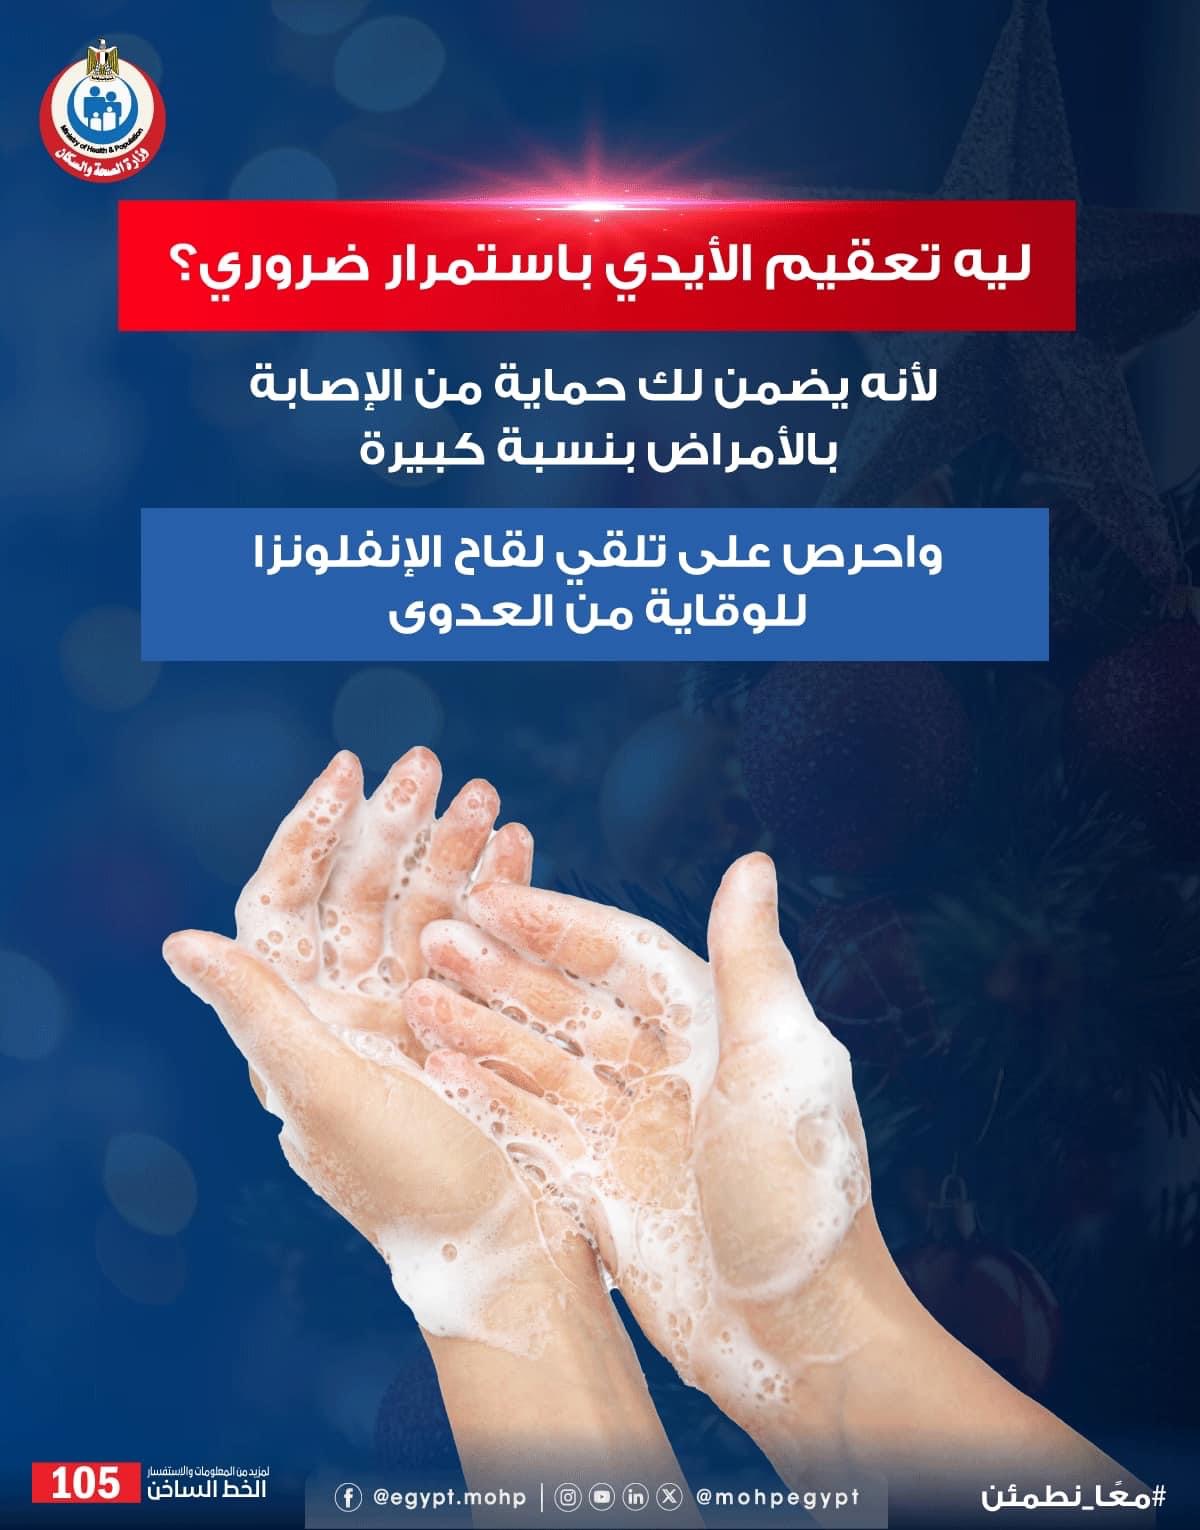 غسل وتعقيم الأيدي ضروري للحماية من  الإصابة بالعدوى